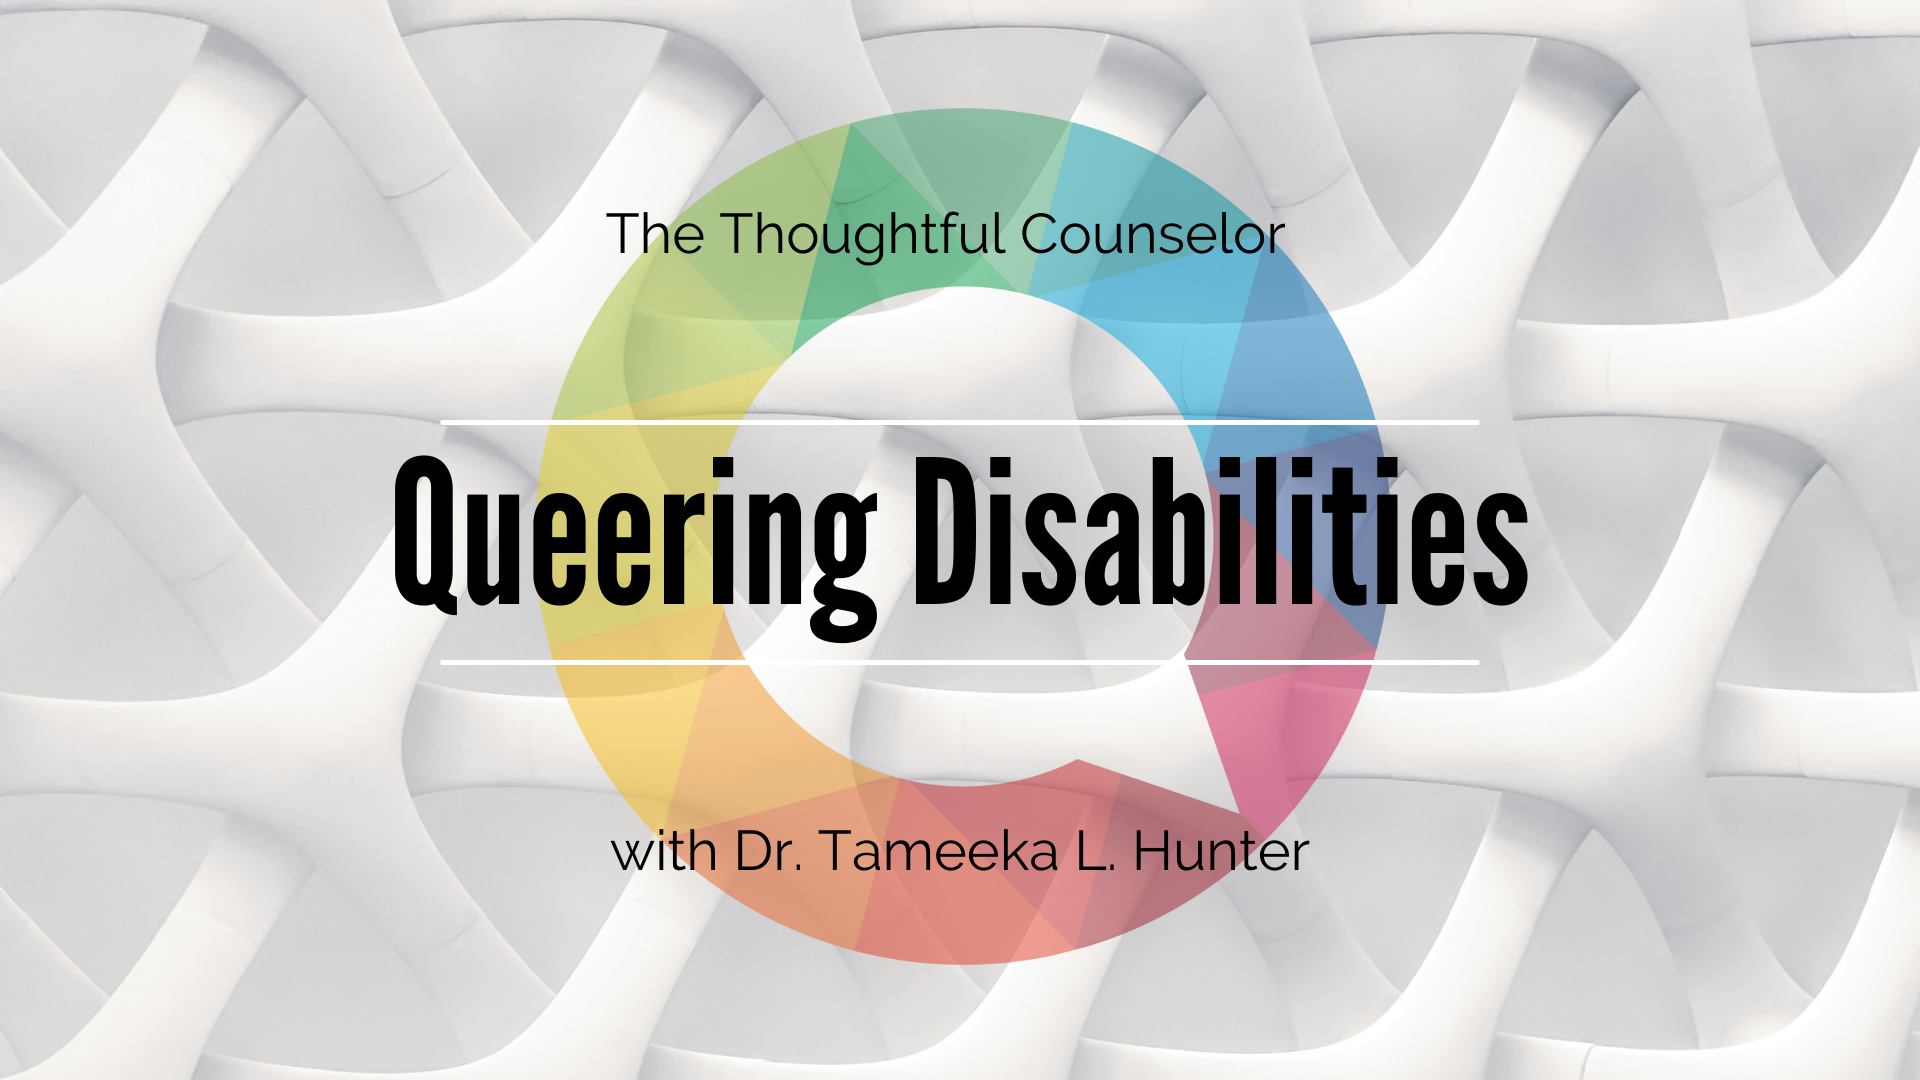 Queering Disabilities: Understanding Disability, the Forgotten Margin